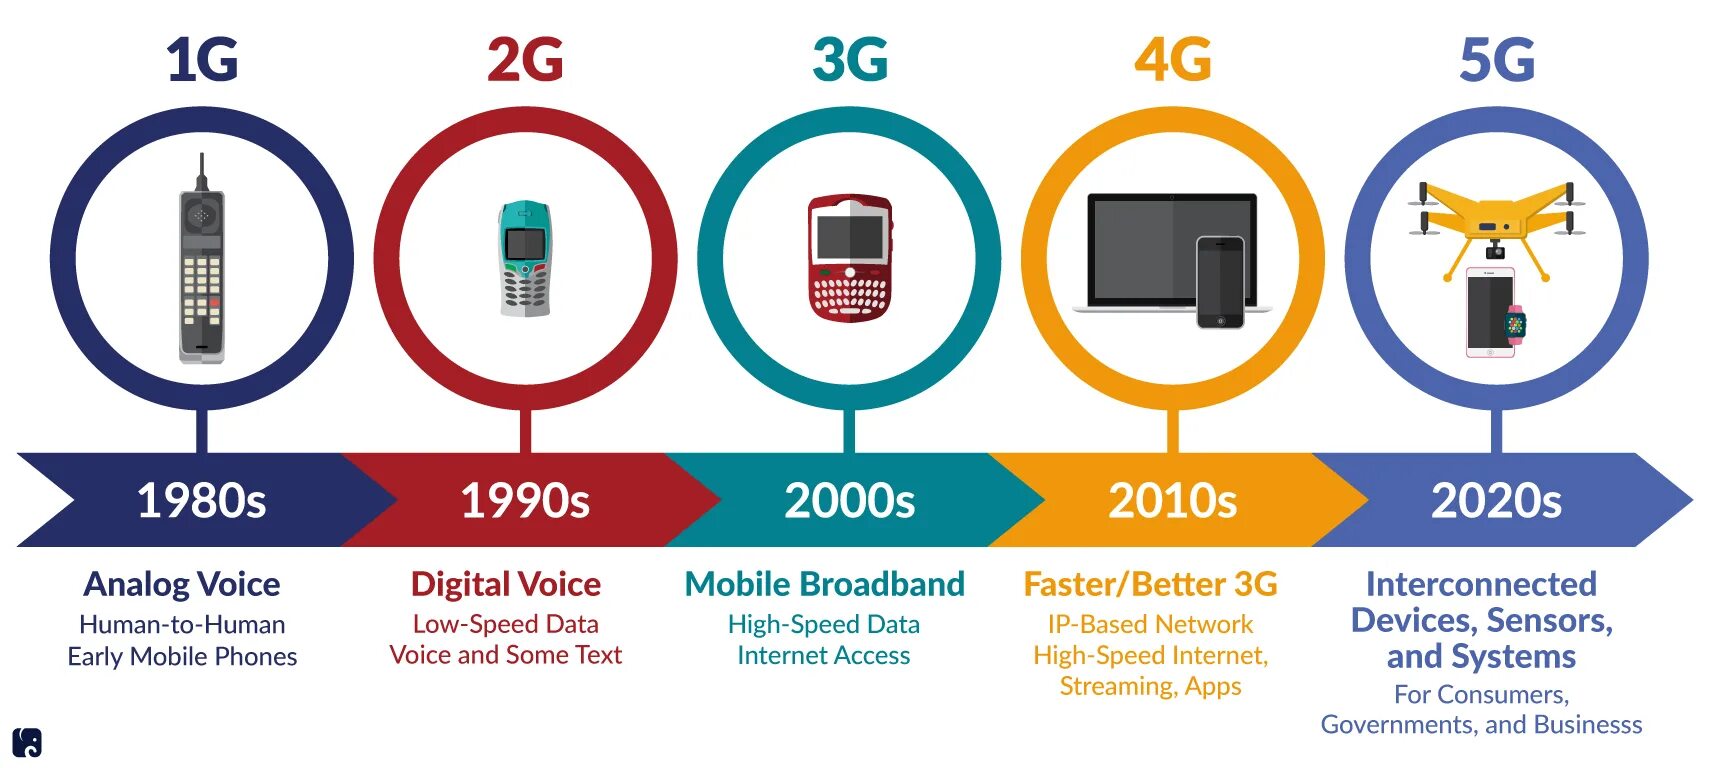 Поколения сотовой связи 2g 3g и 4g. Технологии сотовой связи 2g 3g 4g. 4g стандарты сотовой сети. Сотовая связь 1g 2g 3g 4g 5g.